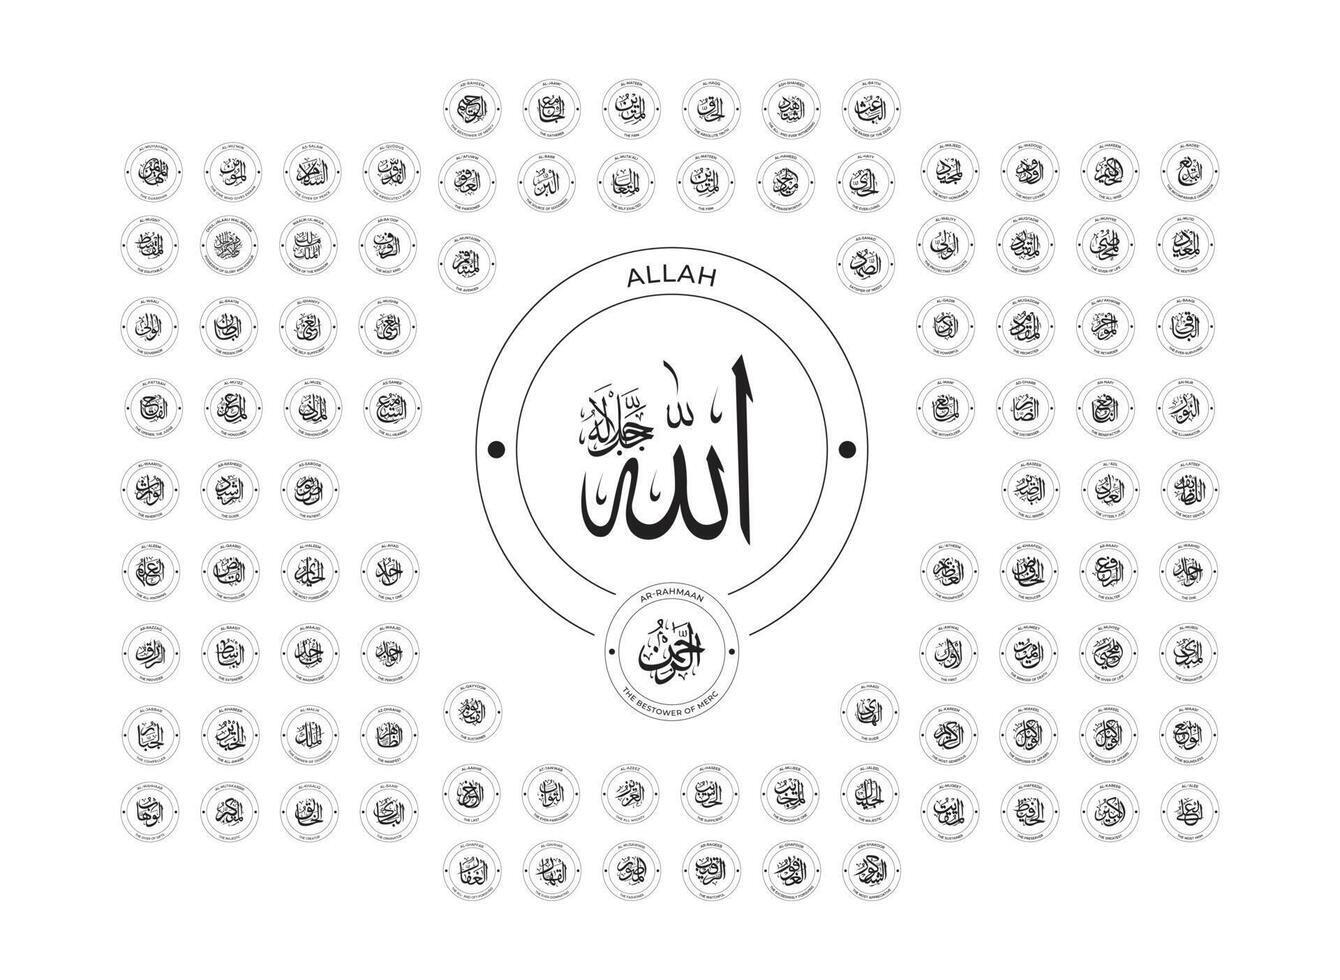 Allah Namen, Allah, Namen von Allah, Islam, Namen, Allahu Akbar, neunzig neun Namen von Allah, islamisch Erinnerungen, islamisch Zitate, Kalligraphie Kunst, islamisch, Namen von Gott, islamisch Kunst vektor